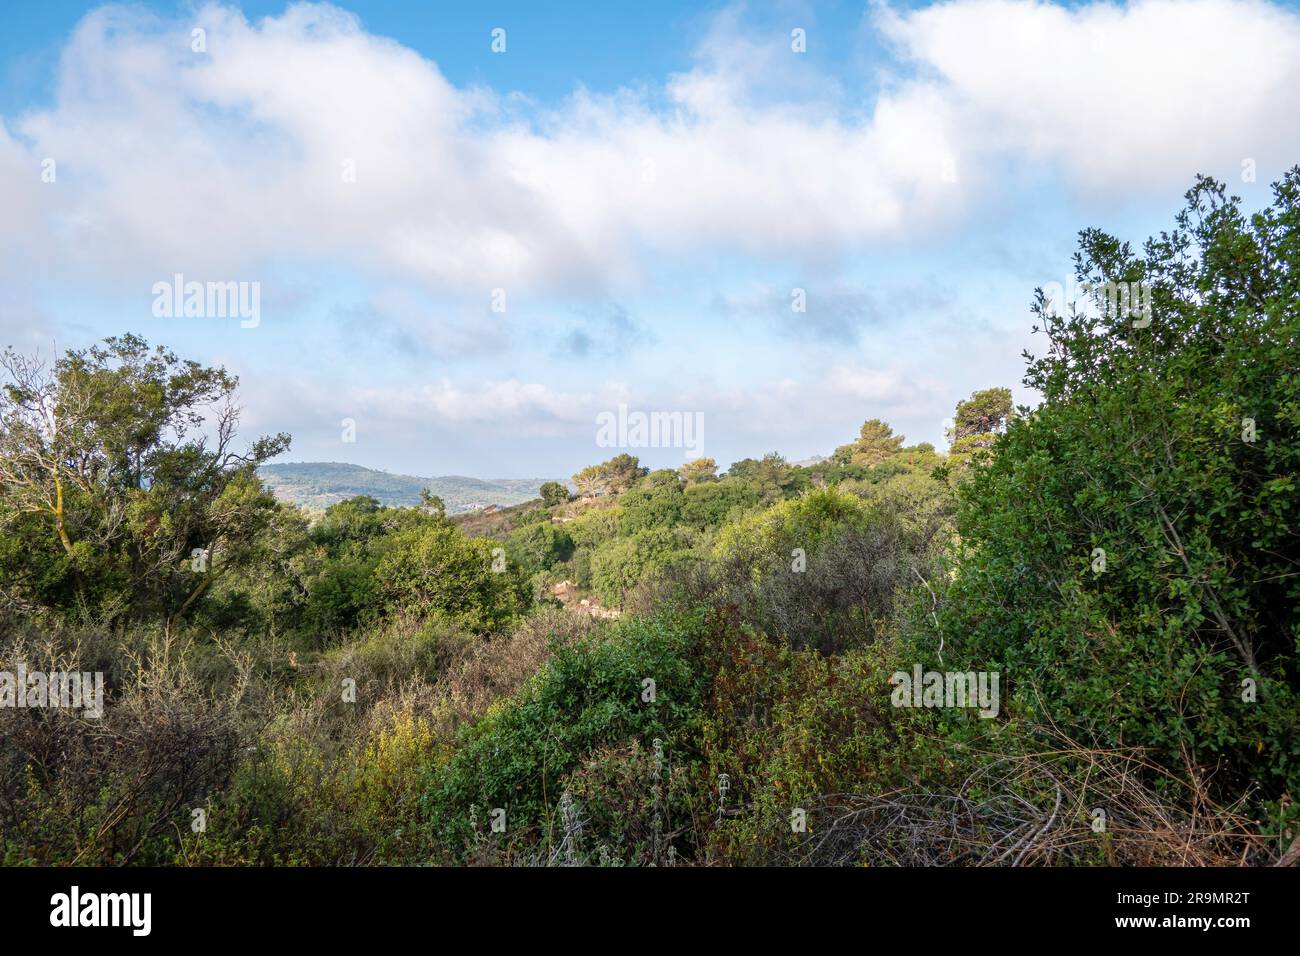 Galilea Occidental Monte Carmelo contra el cielo azul con nubes blancas. Temporada de verano. Hierba seca y árboles eternamente verdes. Israel. Foto de stock